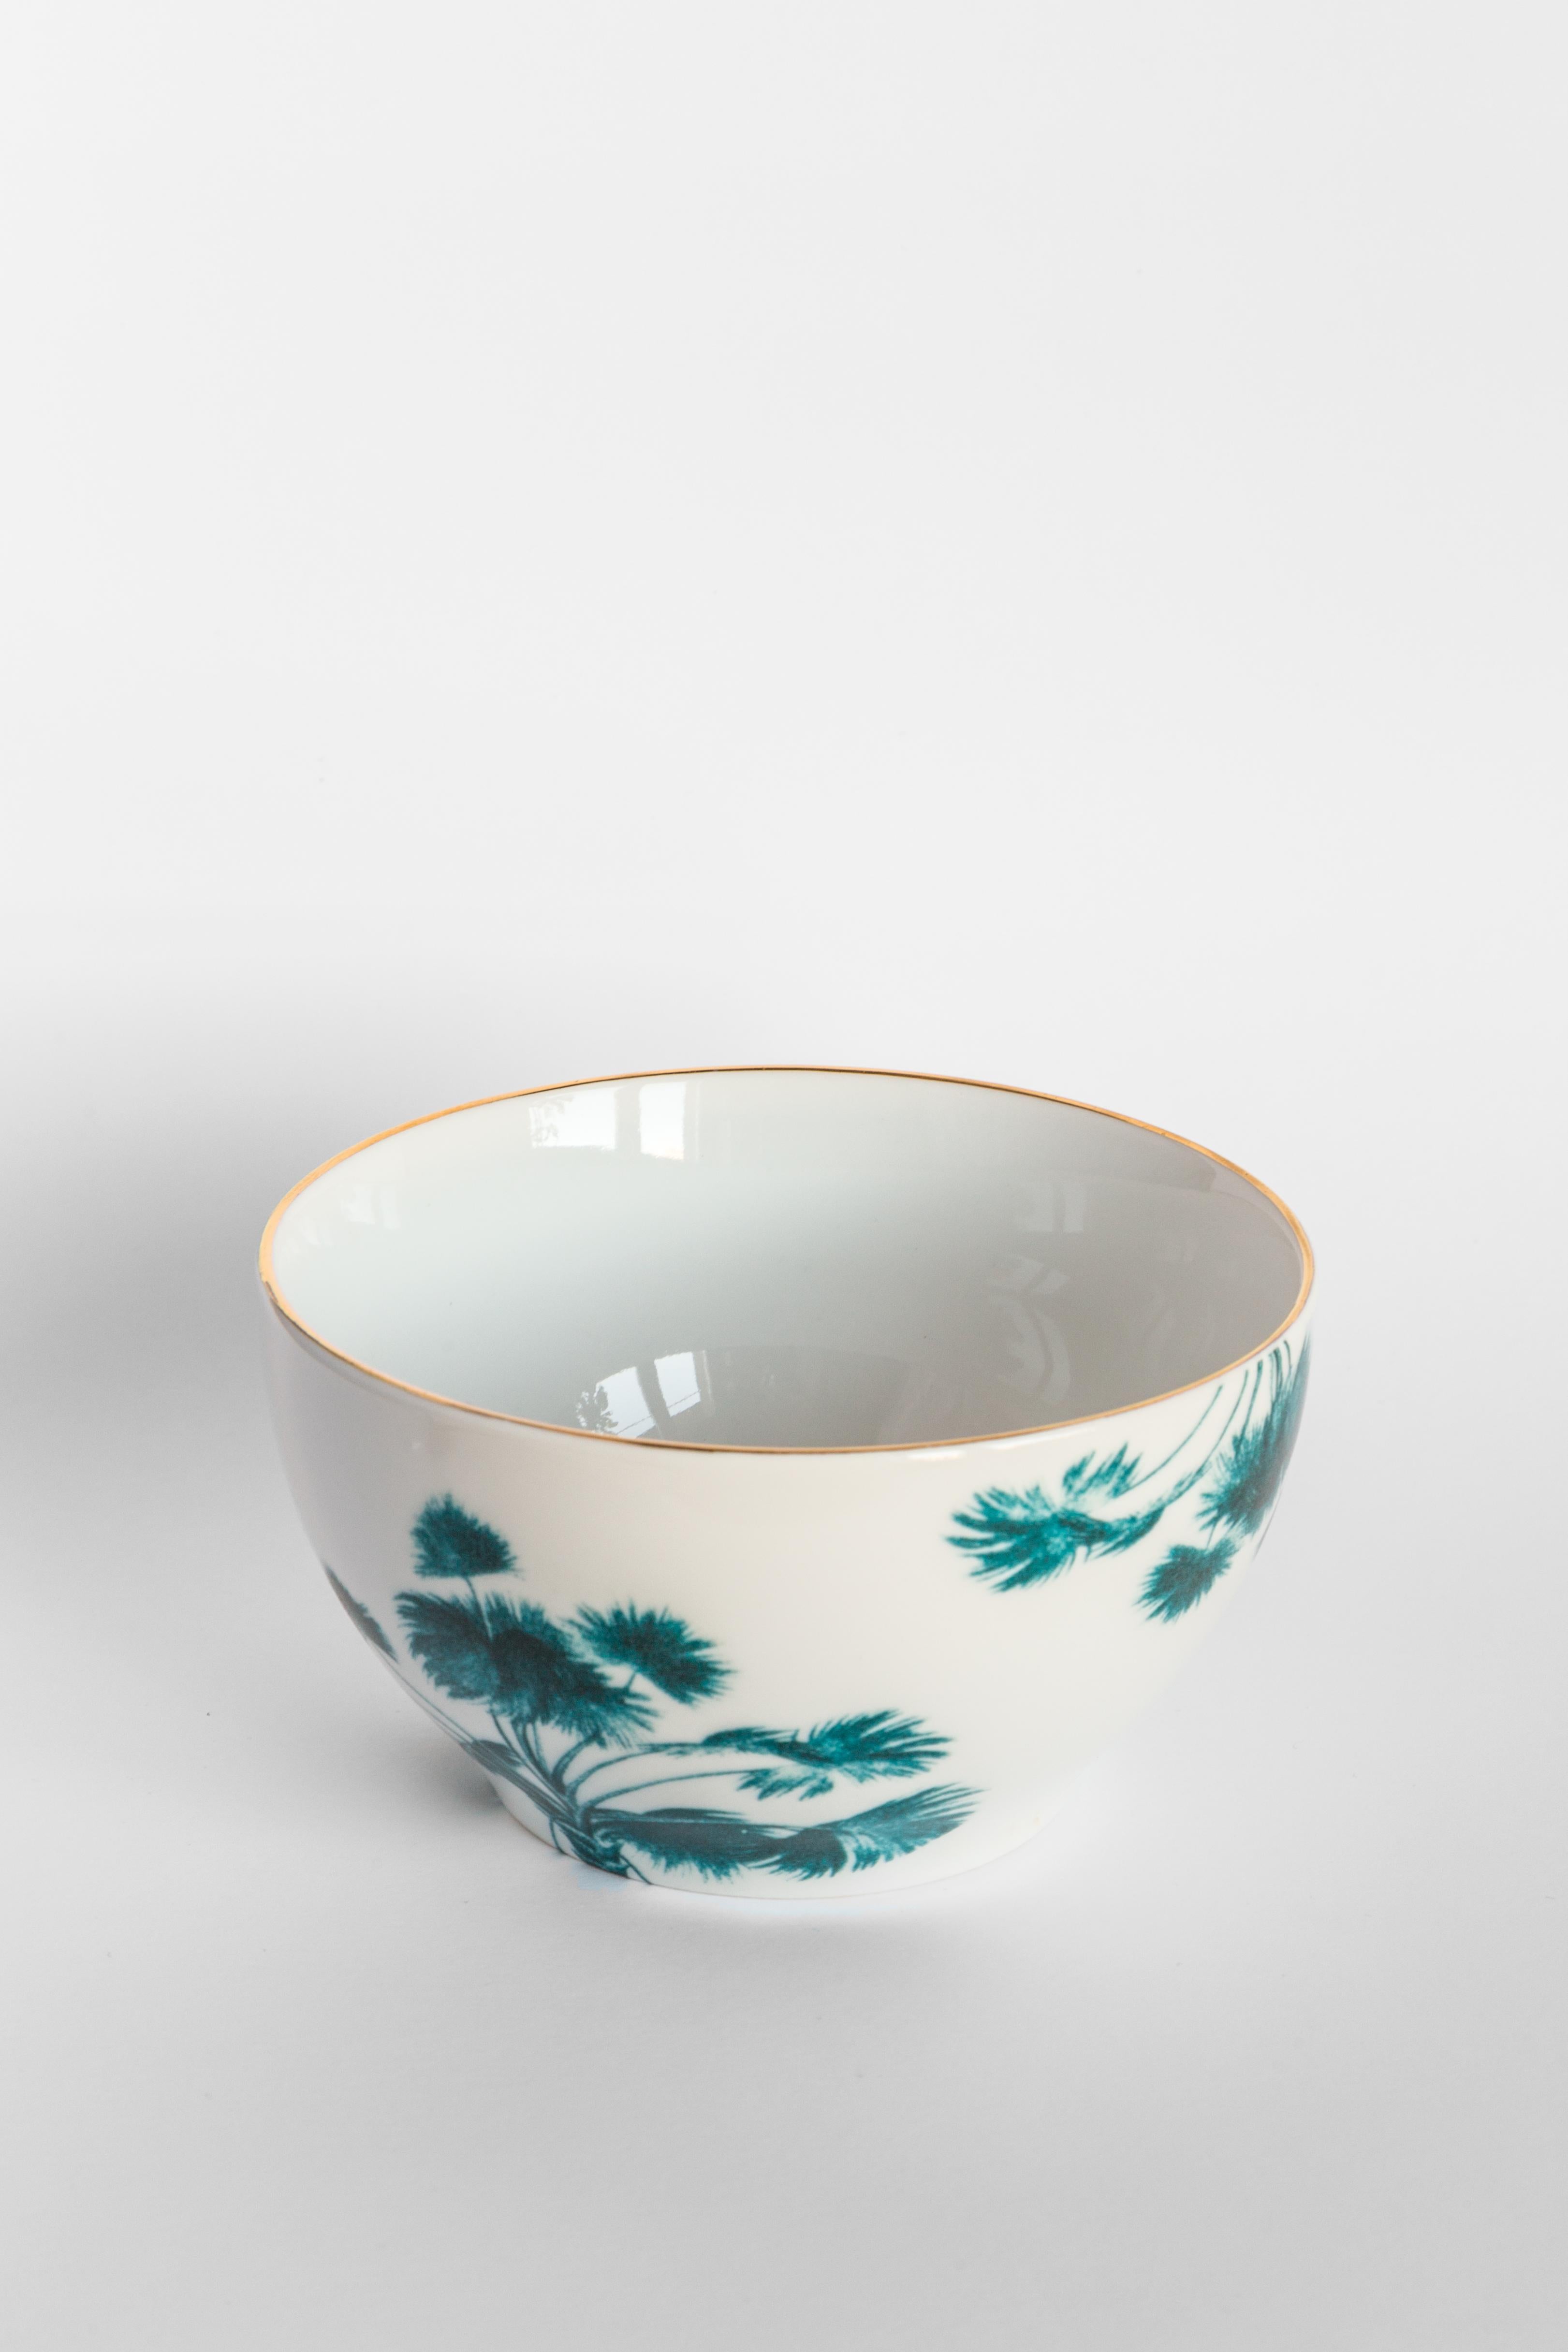 Molded Las Palmas, Six Contemporary Porcelain Bowls with Decorative Design For Sale